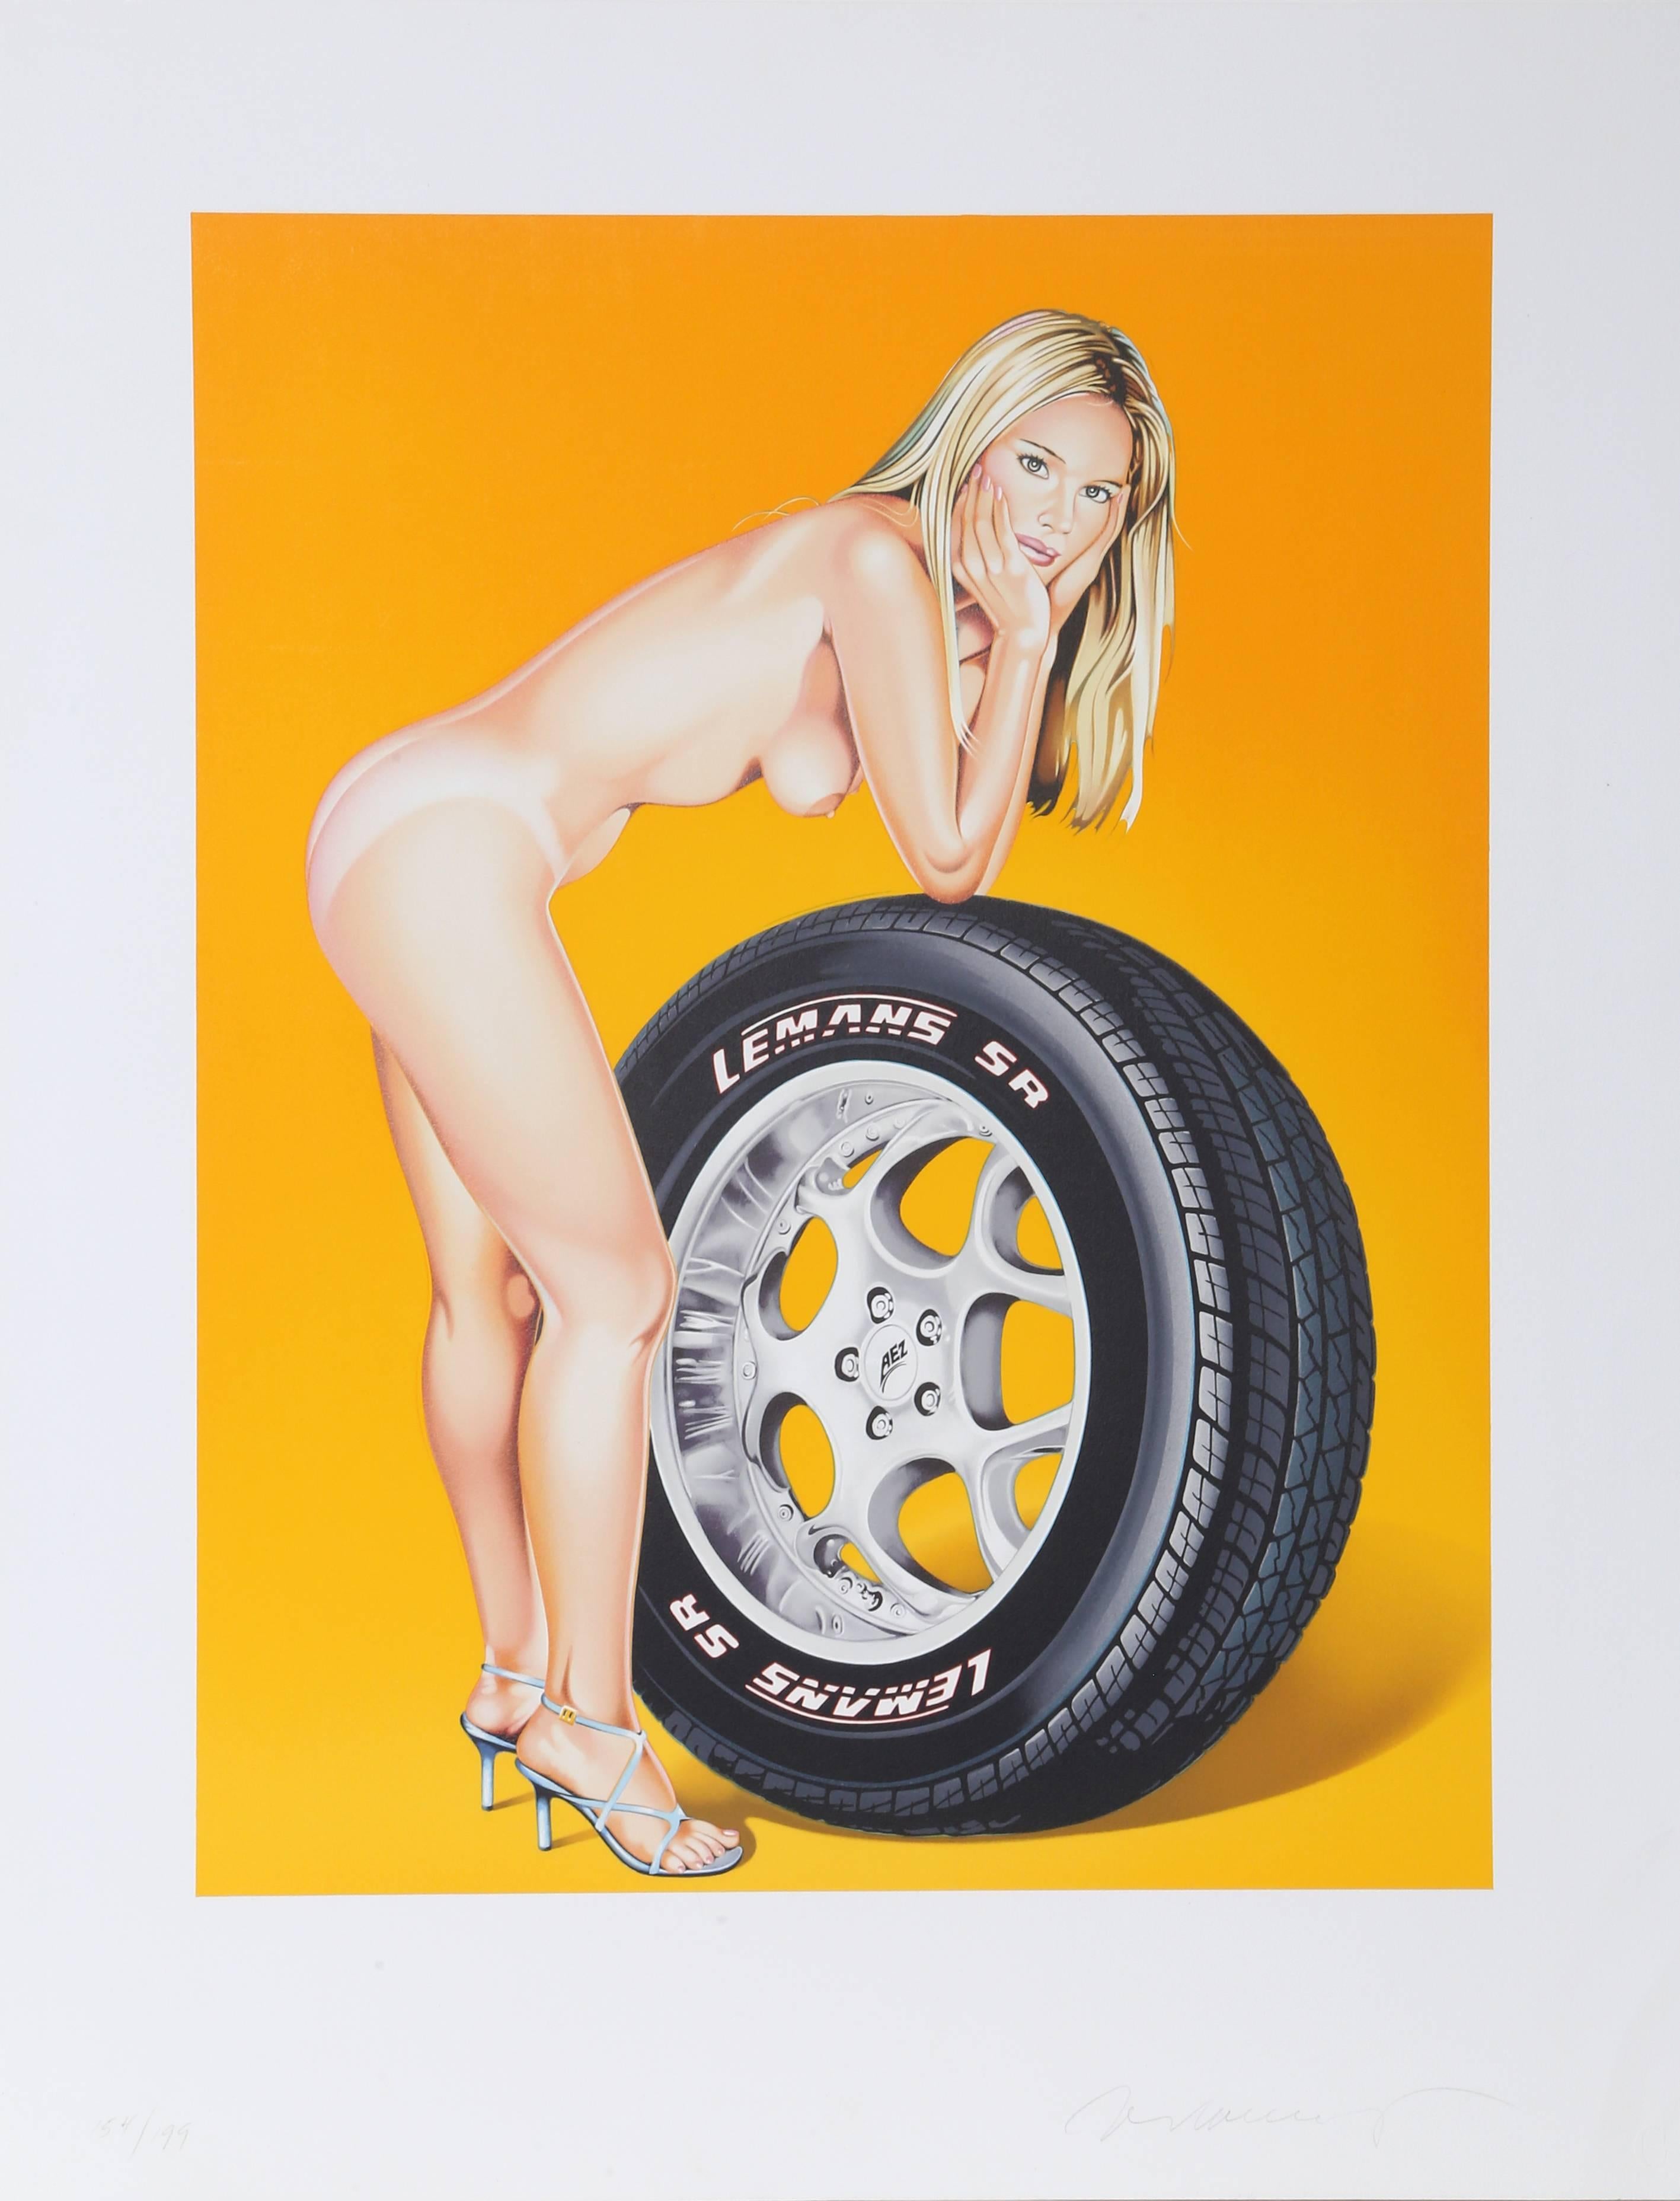 Artistics : Mel Ramos
Titre : Tyra Tyre
Année : 2004
Médium : Lithographie, signée et numérotée au crayon
Edition : 154/199
Image : 22.5 x 17.5 pouces
Taille du papier : 29.5 x 23 pouces